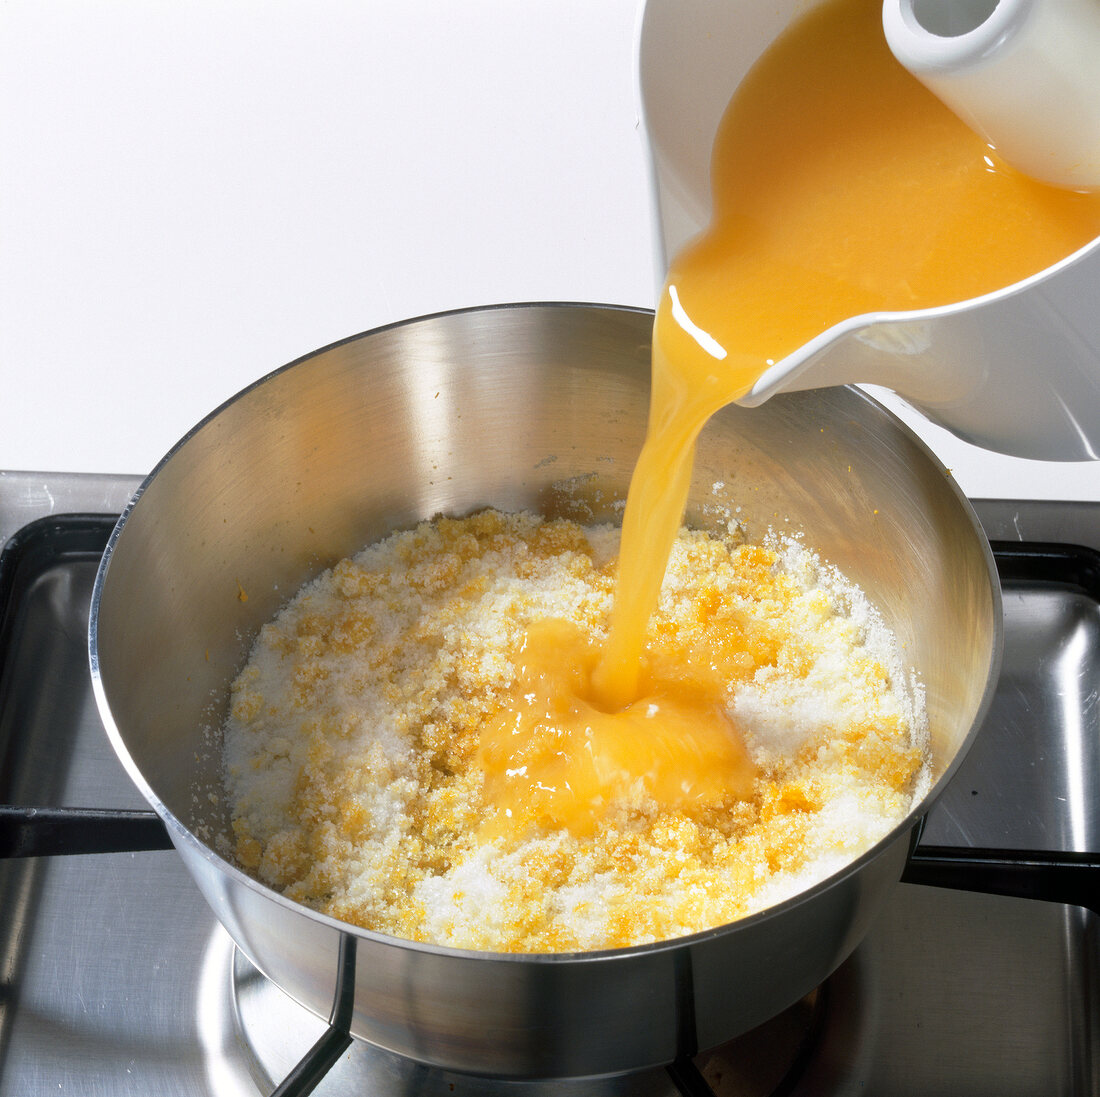 Orange juice being poured in mixture of sugar and orange zest in pot